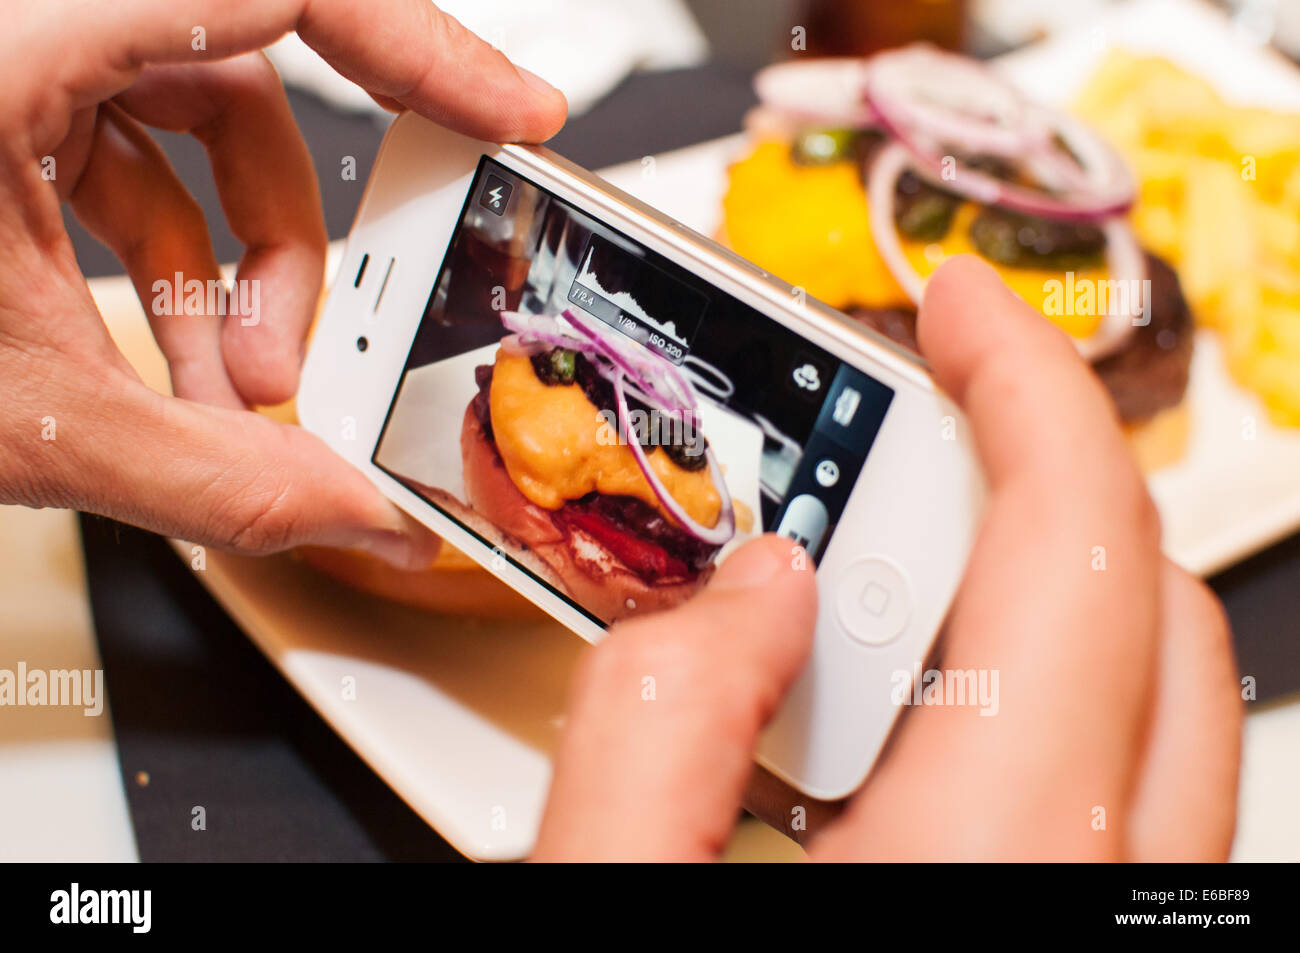 Fotografía de una hamburguesa a través de un smartphone Foto de stock